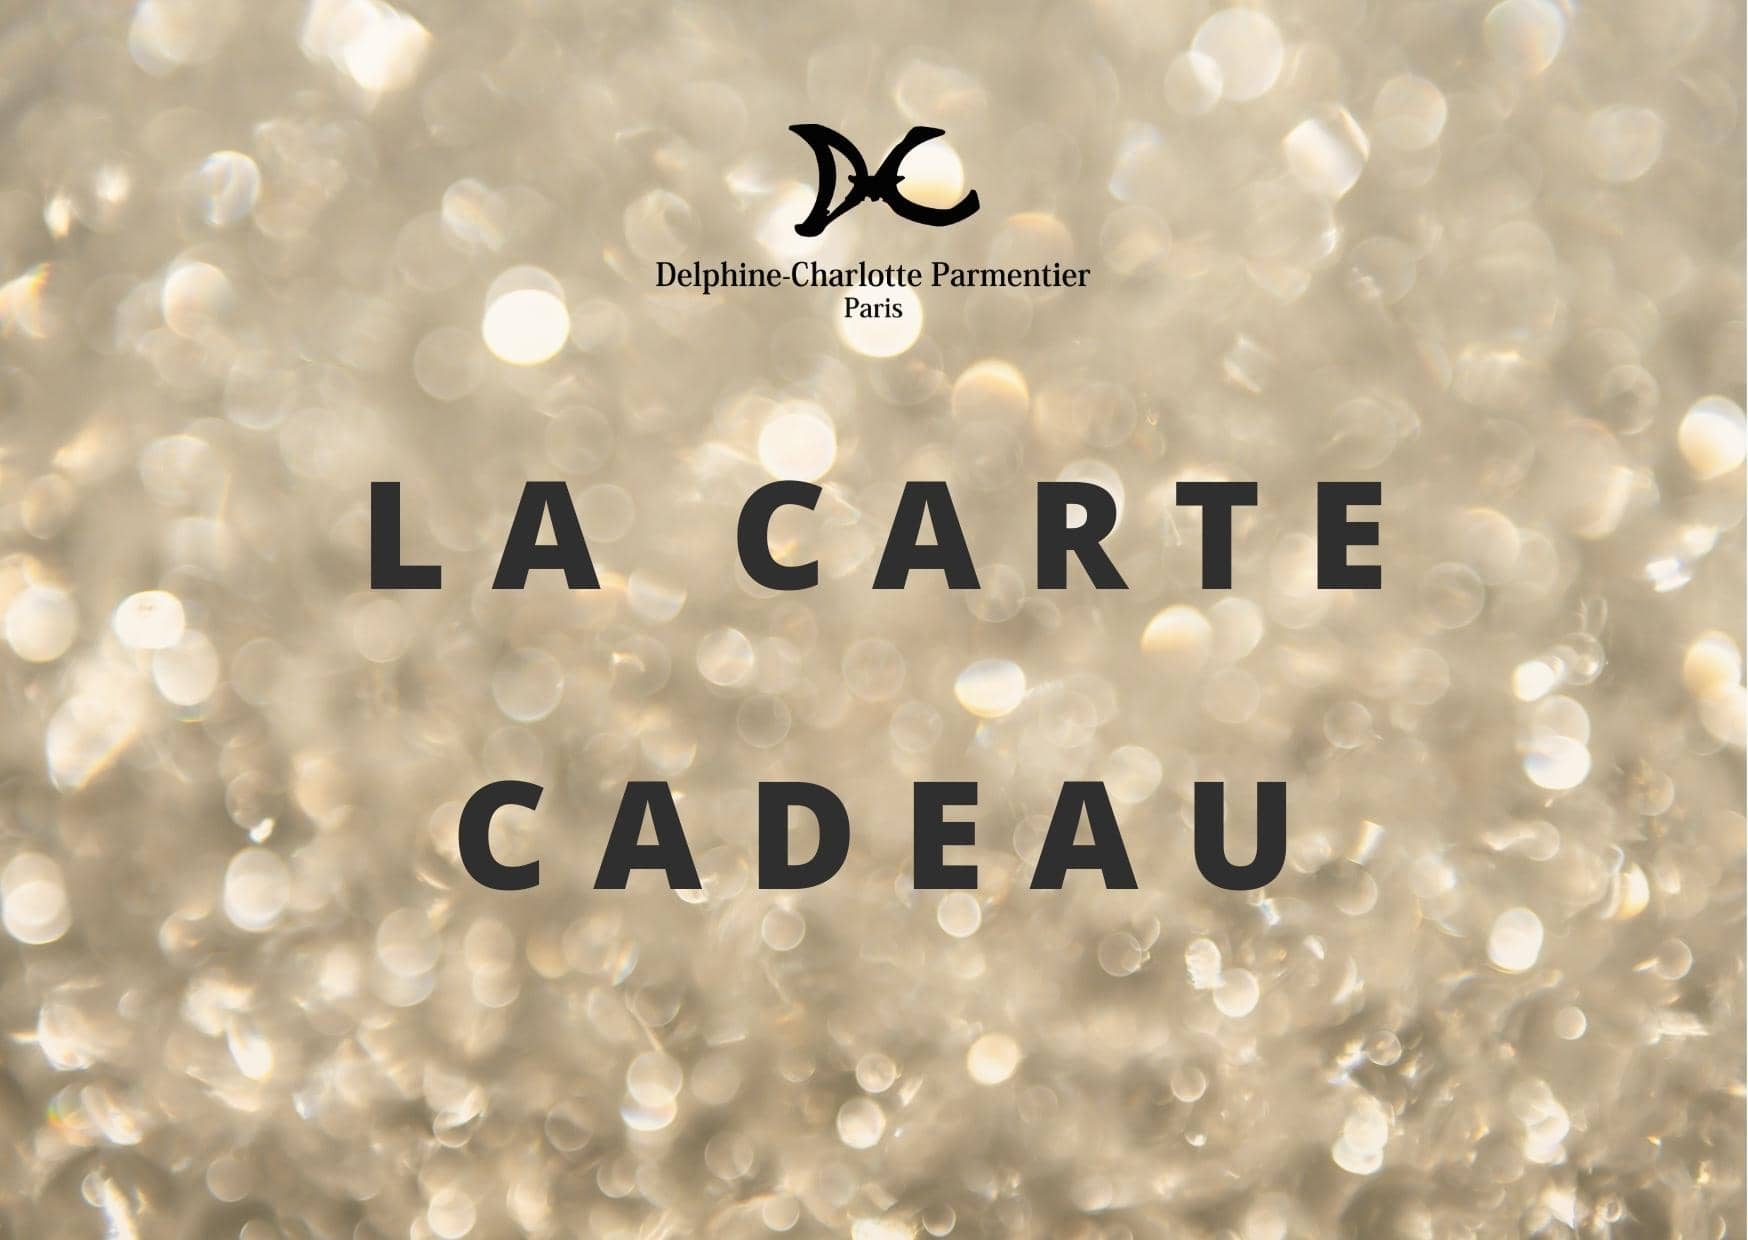 GIFT CARD - Carte Cadeau - Delphine-Charlotte Parmentier